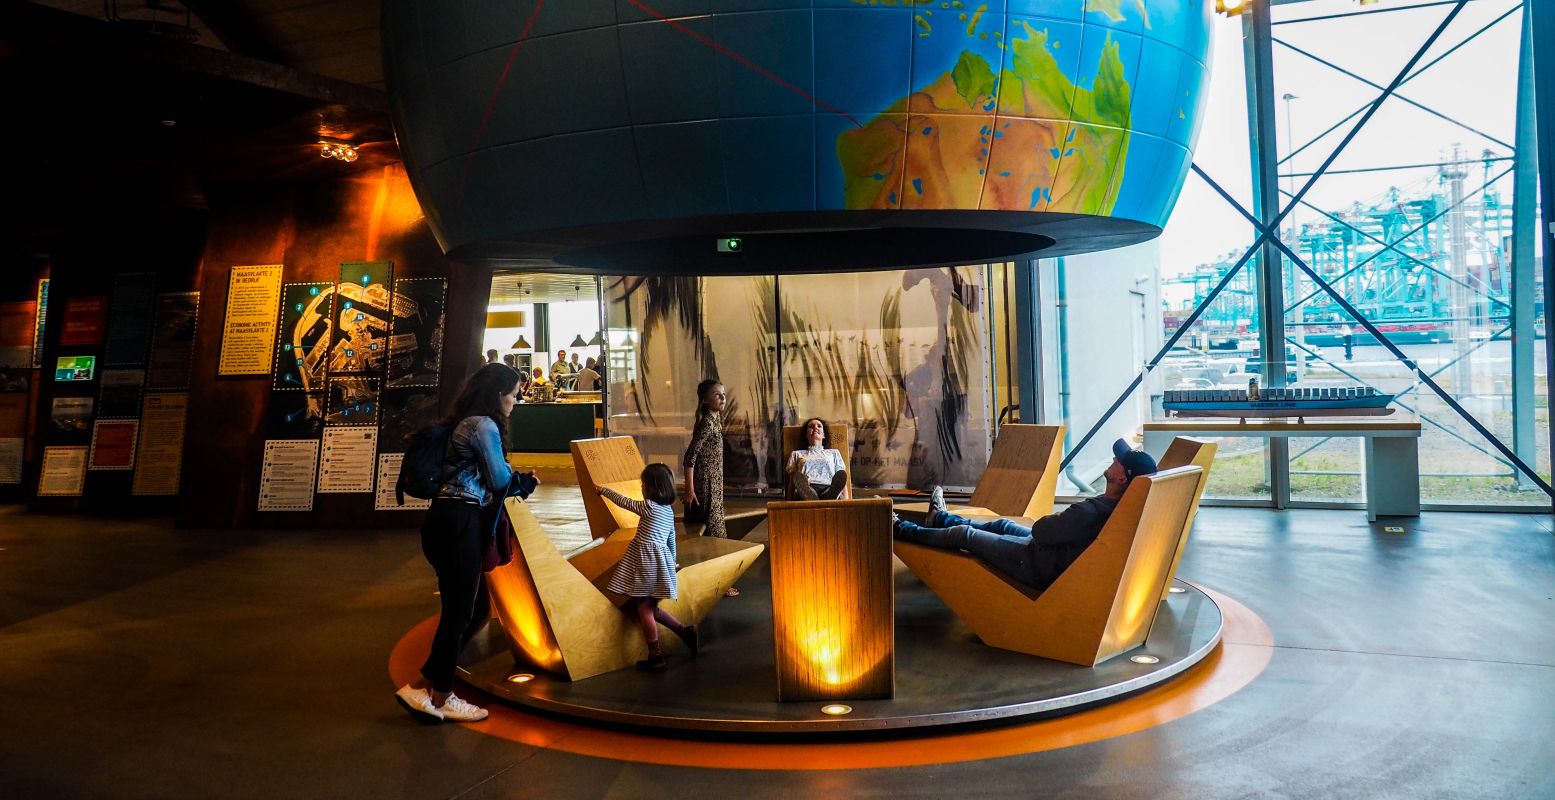 In de interactieve omgeving van FutureLand is altijd wat te beleven. Gratis! Foto: DagjeWeg.NL